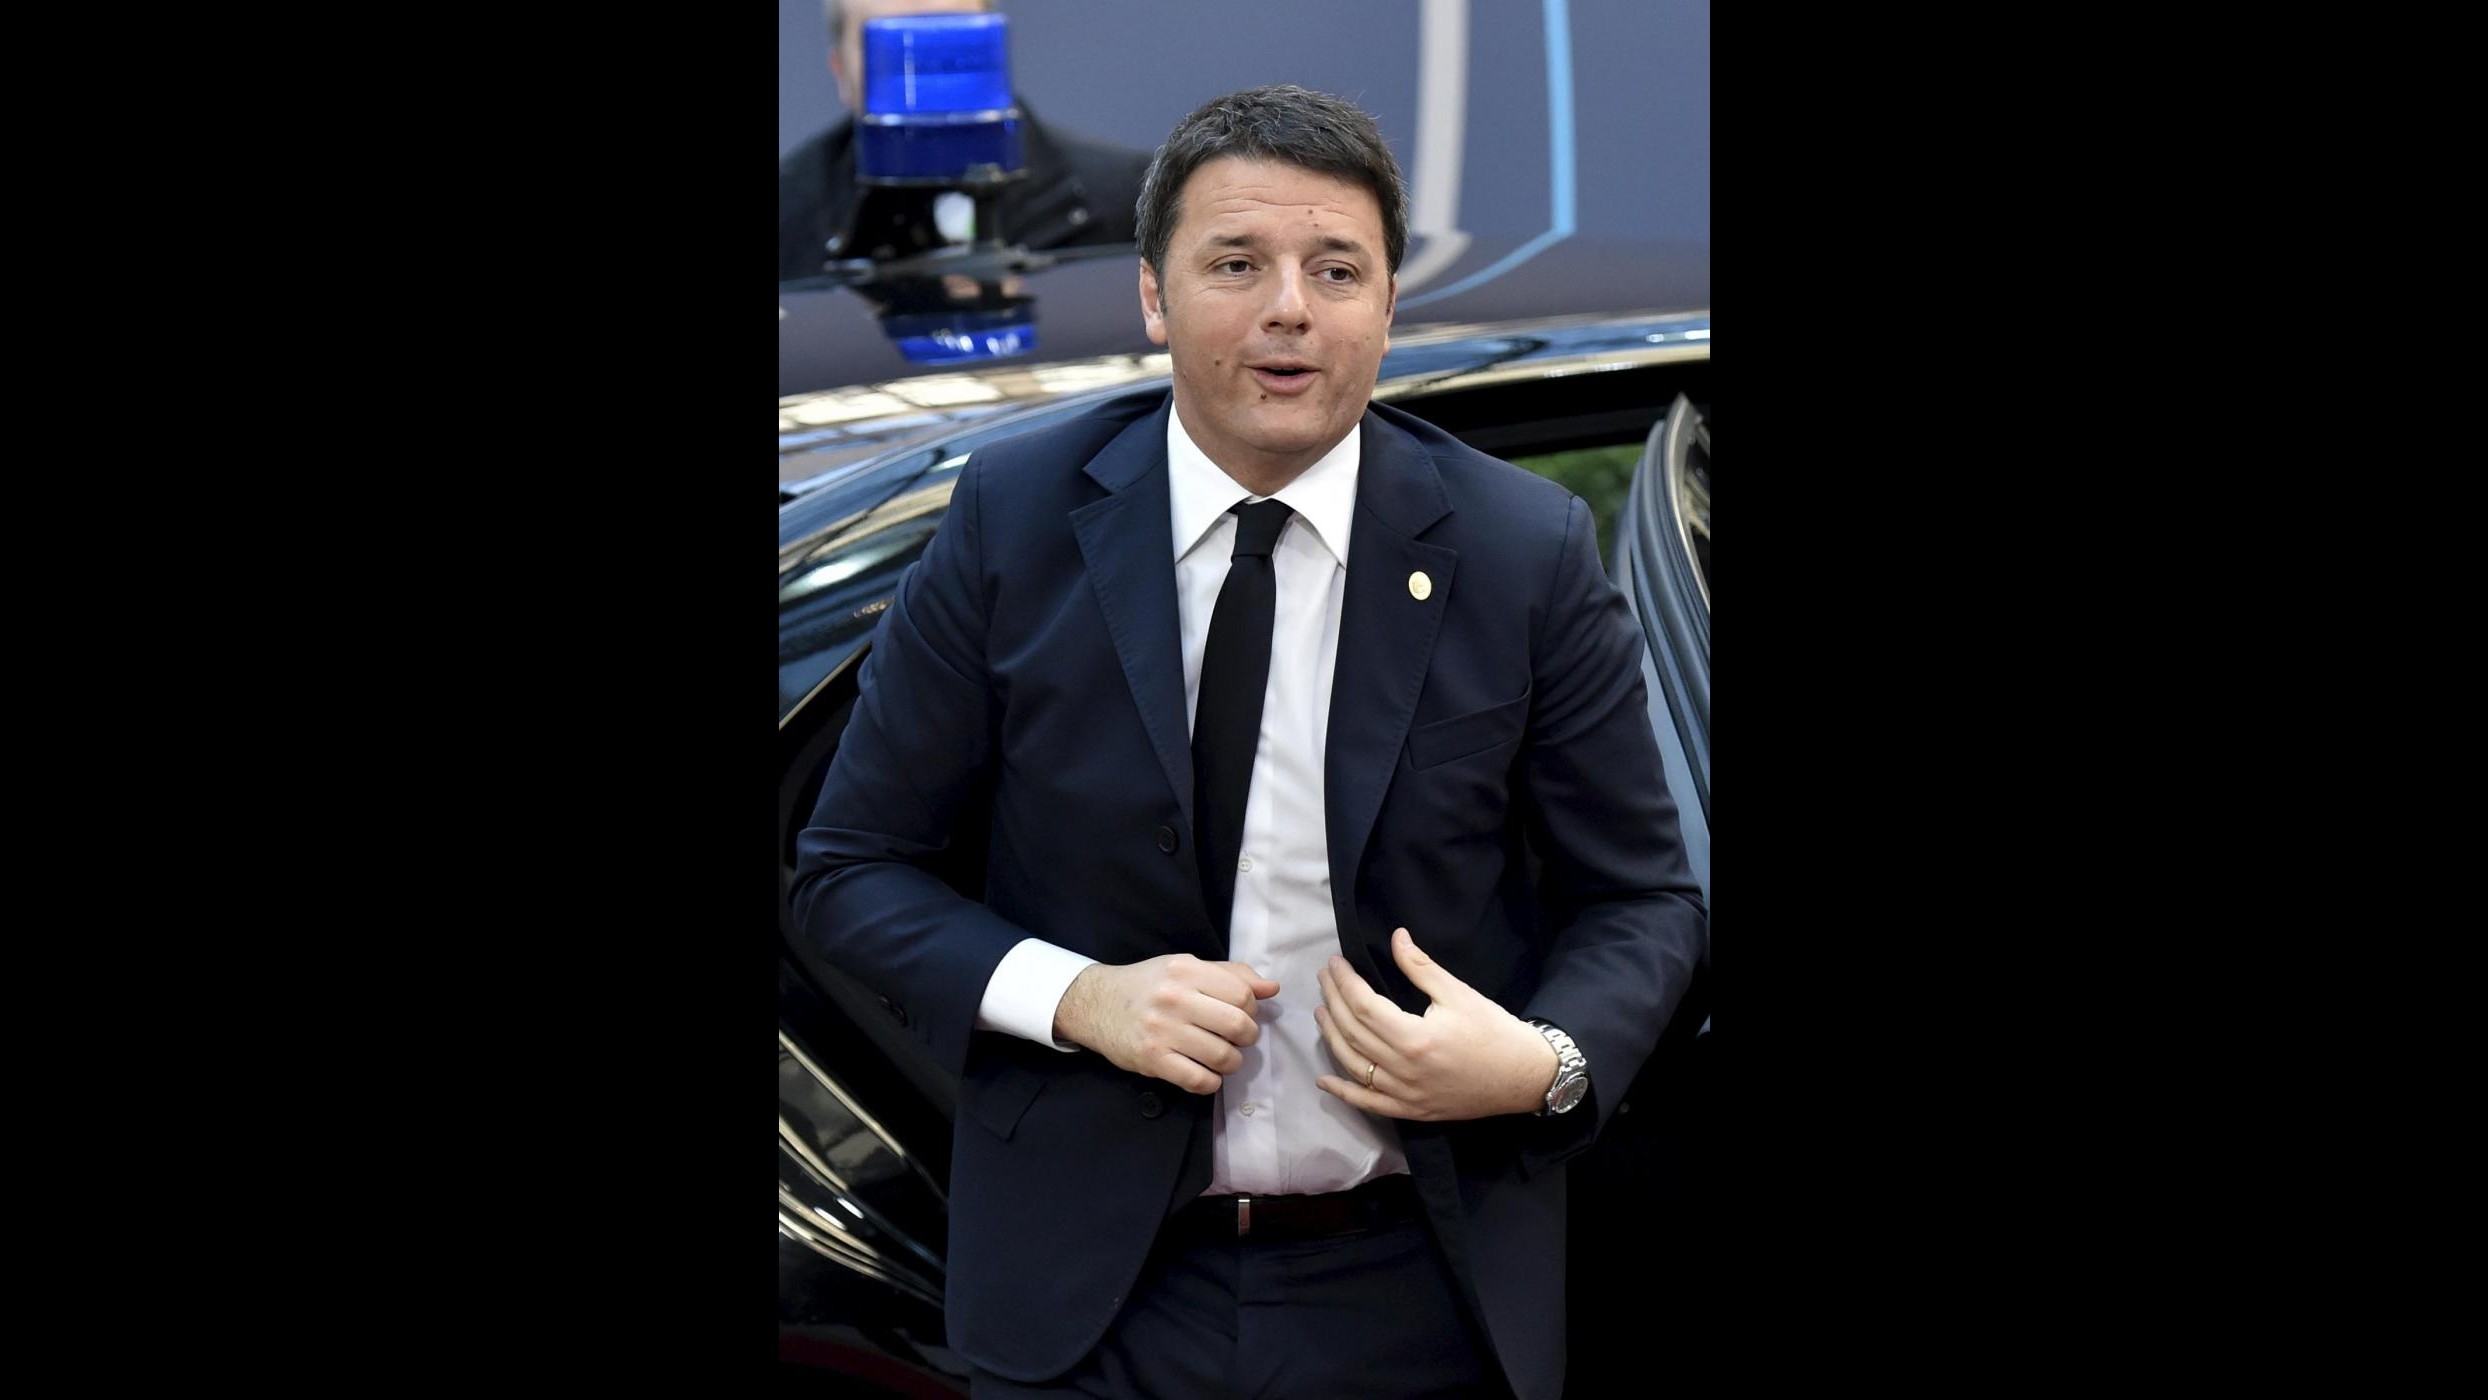 Il cordoglio di Renzi: Umberto Eco perdita enorme per la cultura